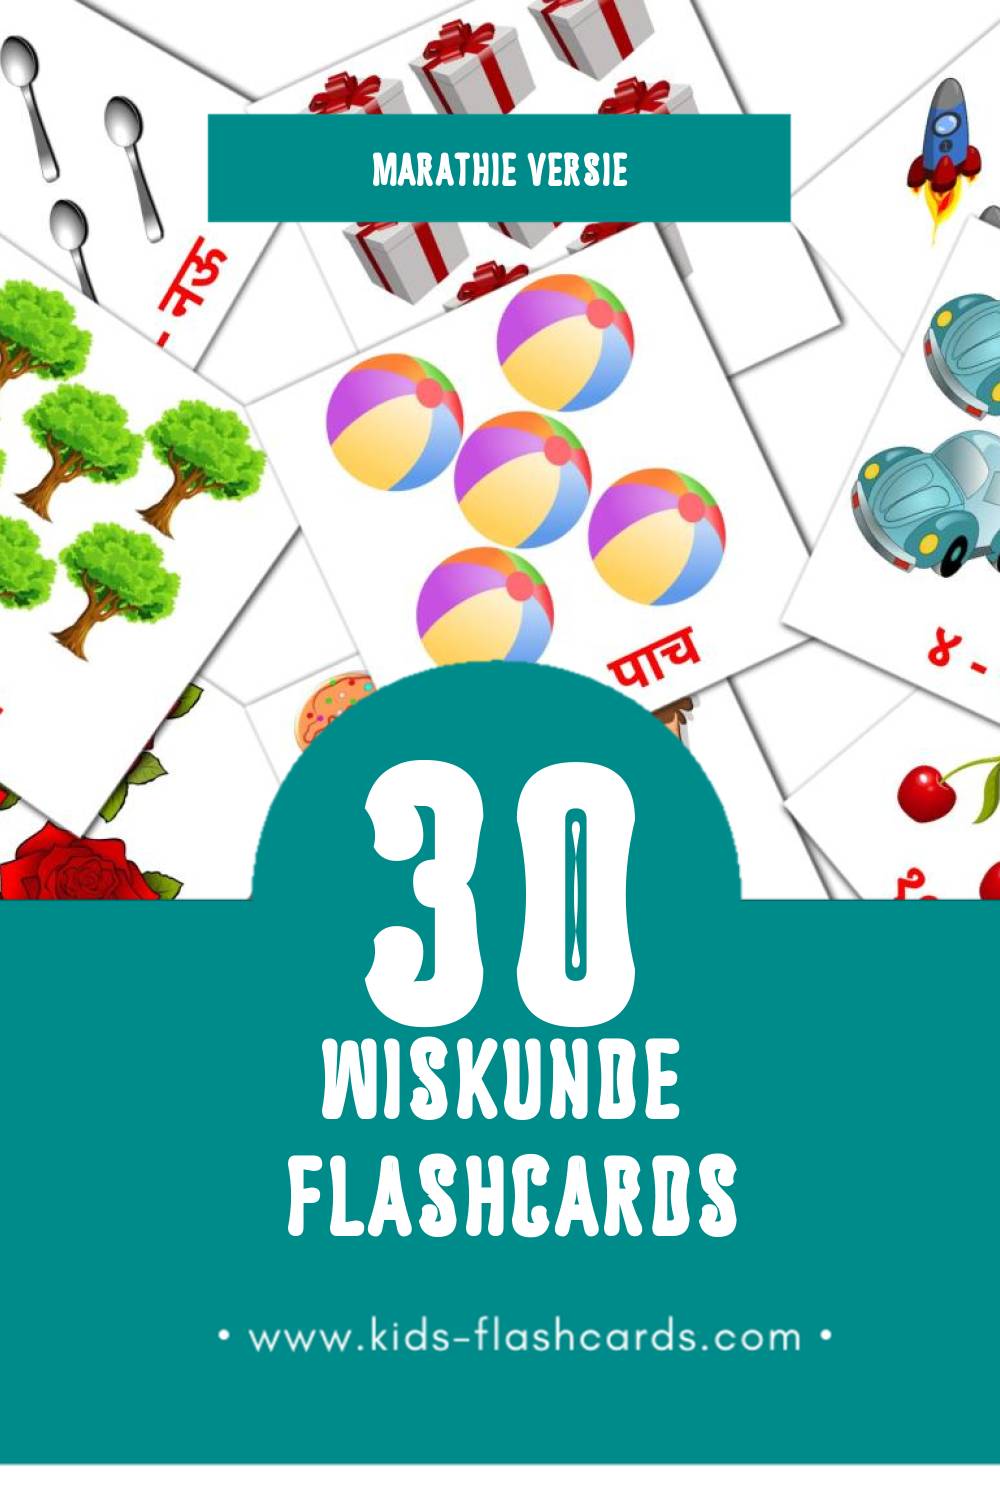 Visuele गणित  Flashcards voor Kleuters (30 kaarten in het Marathi)